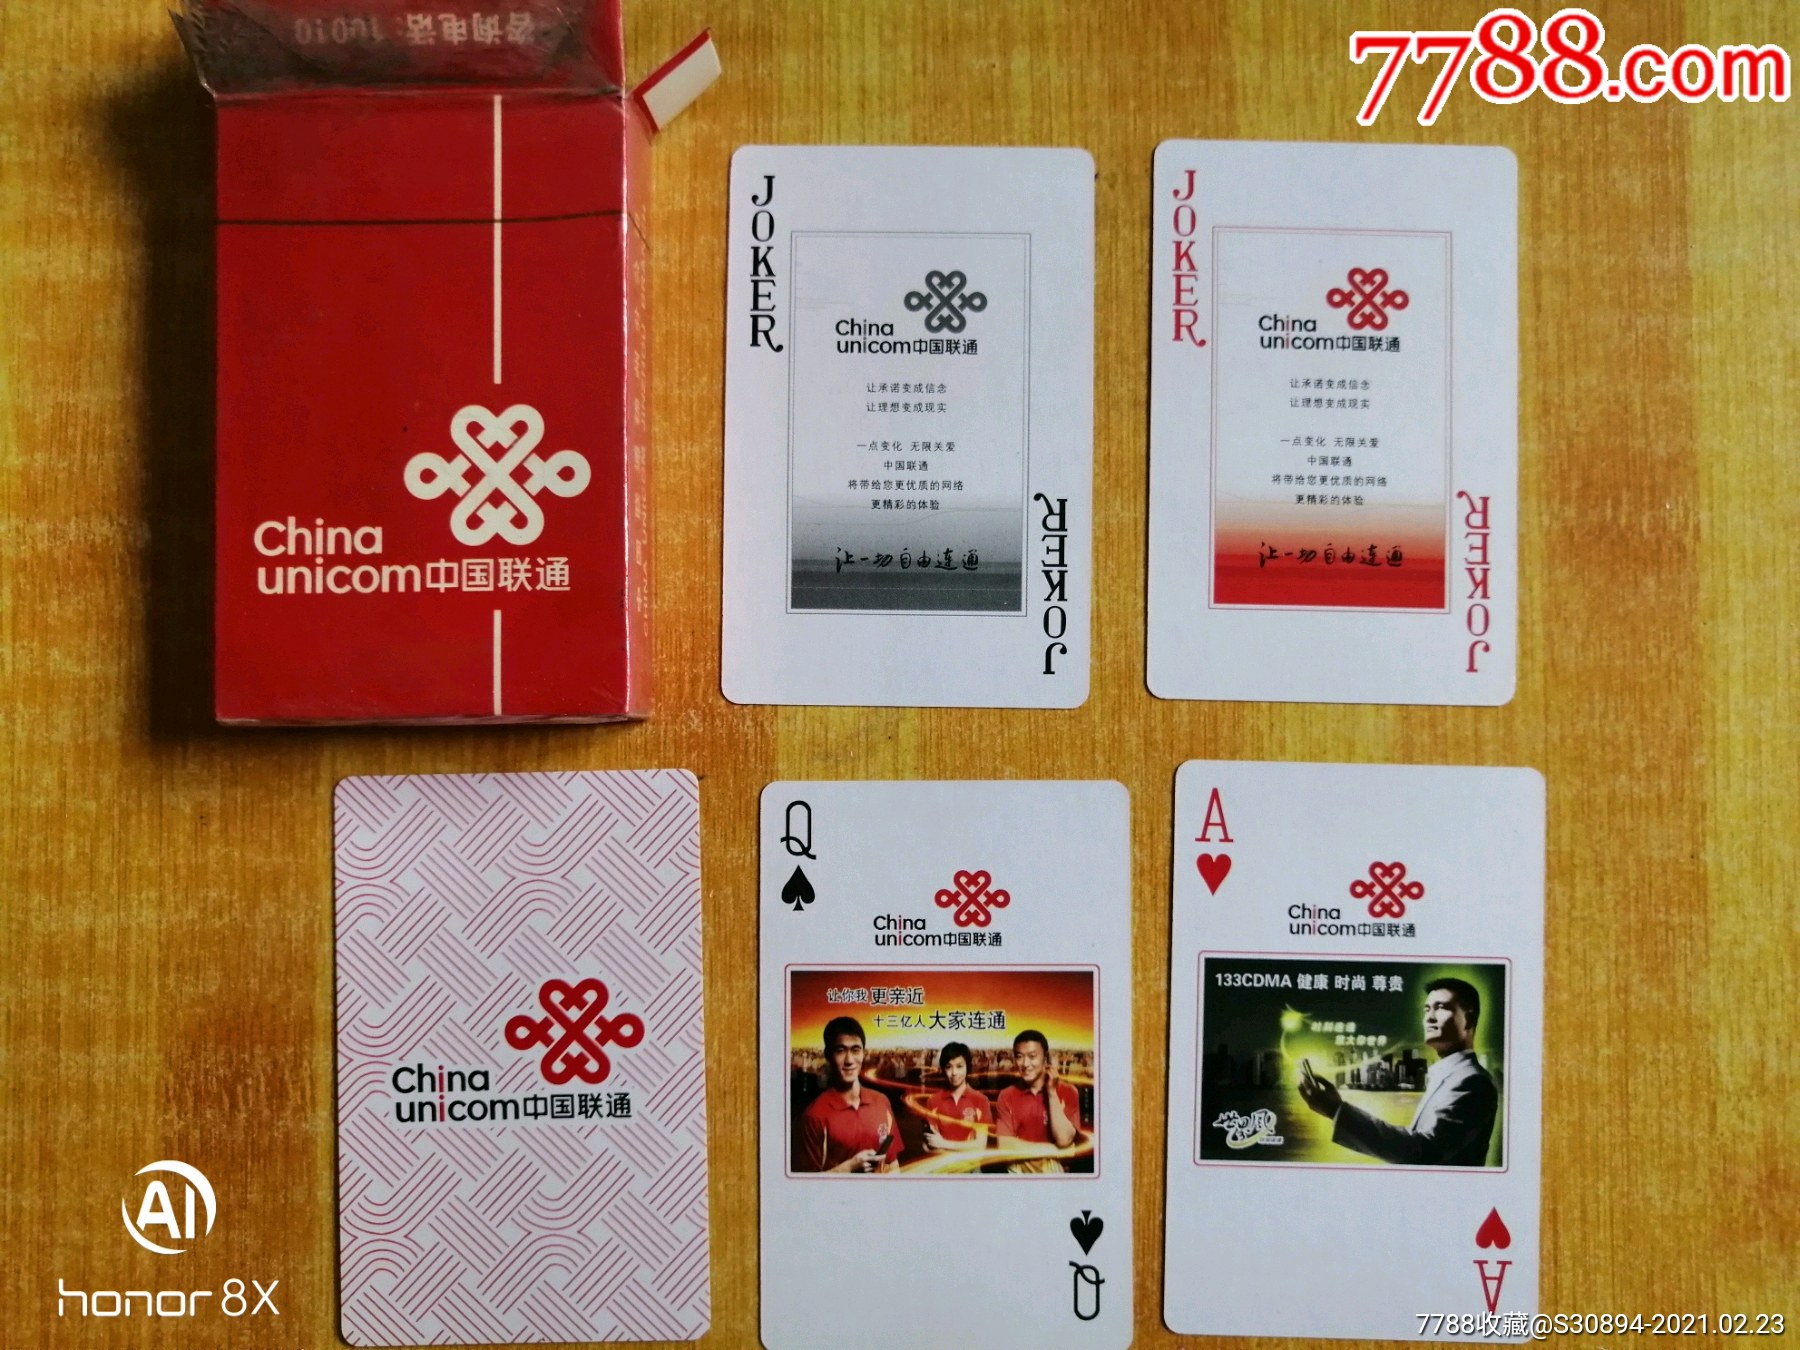 中国联通扑克牌图片